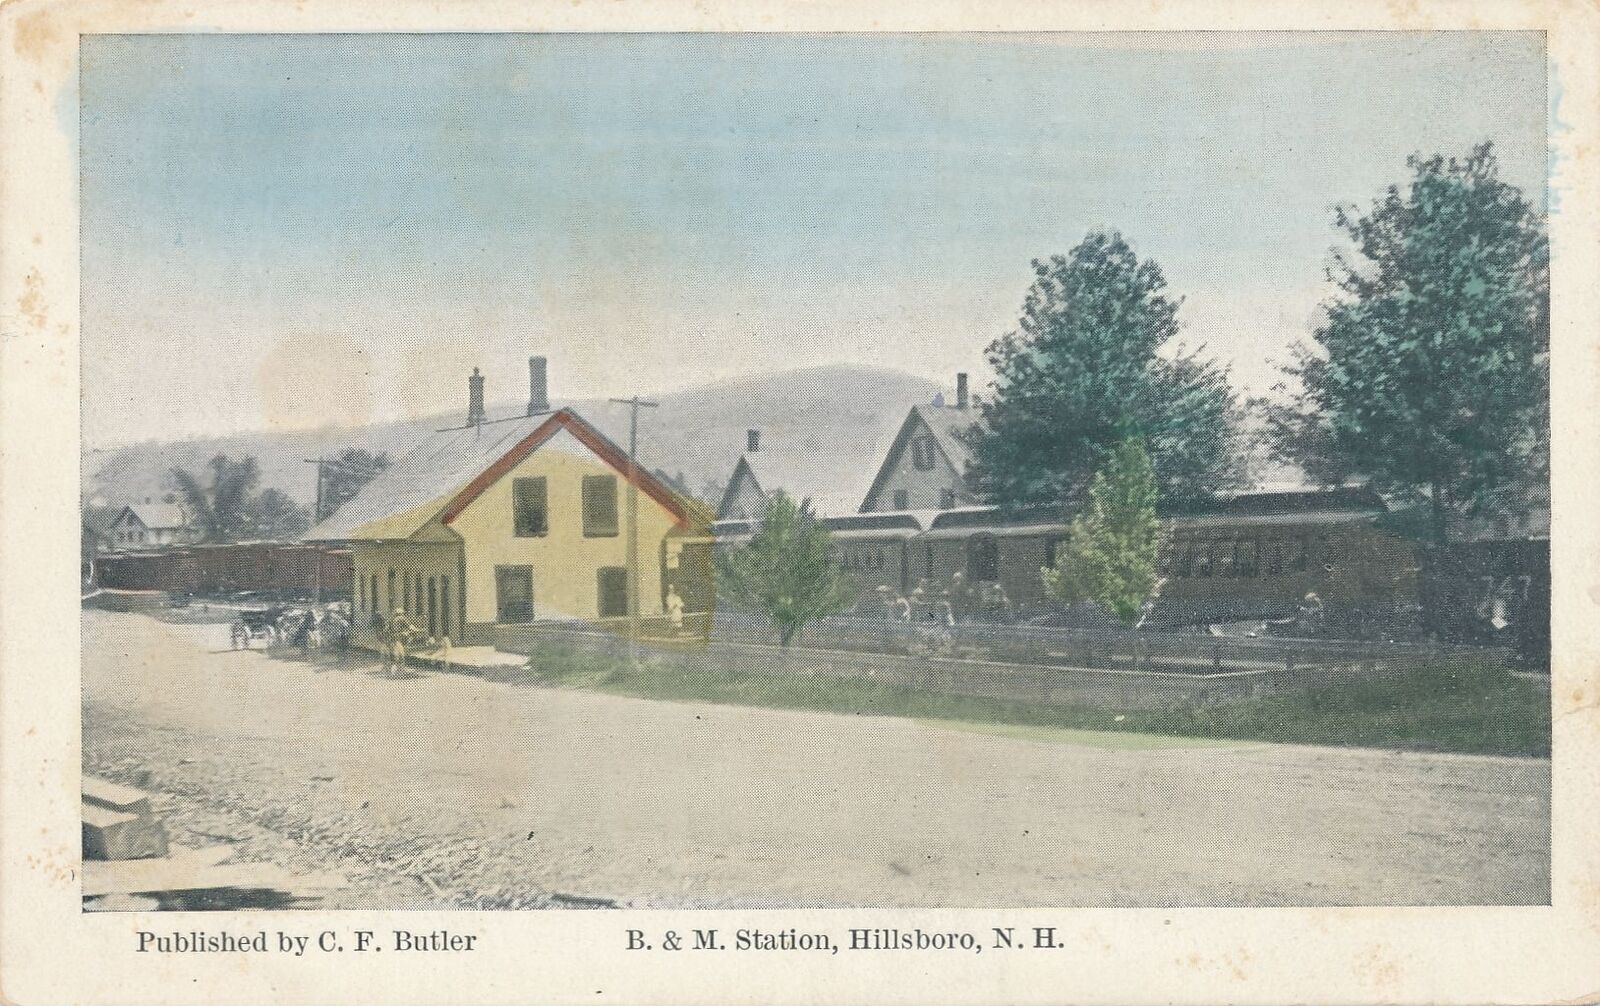 HILLSBORO NH - B. & M. Railroad Station Postcard